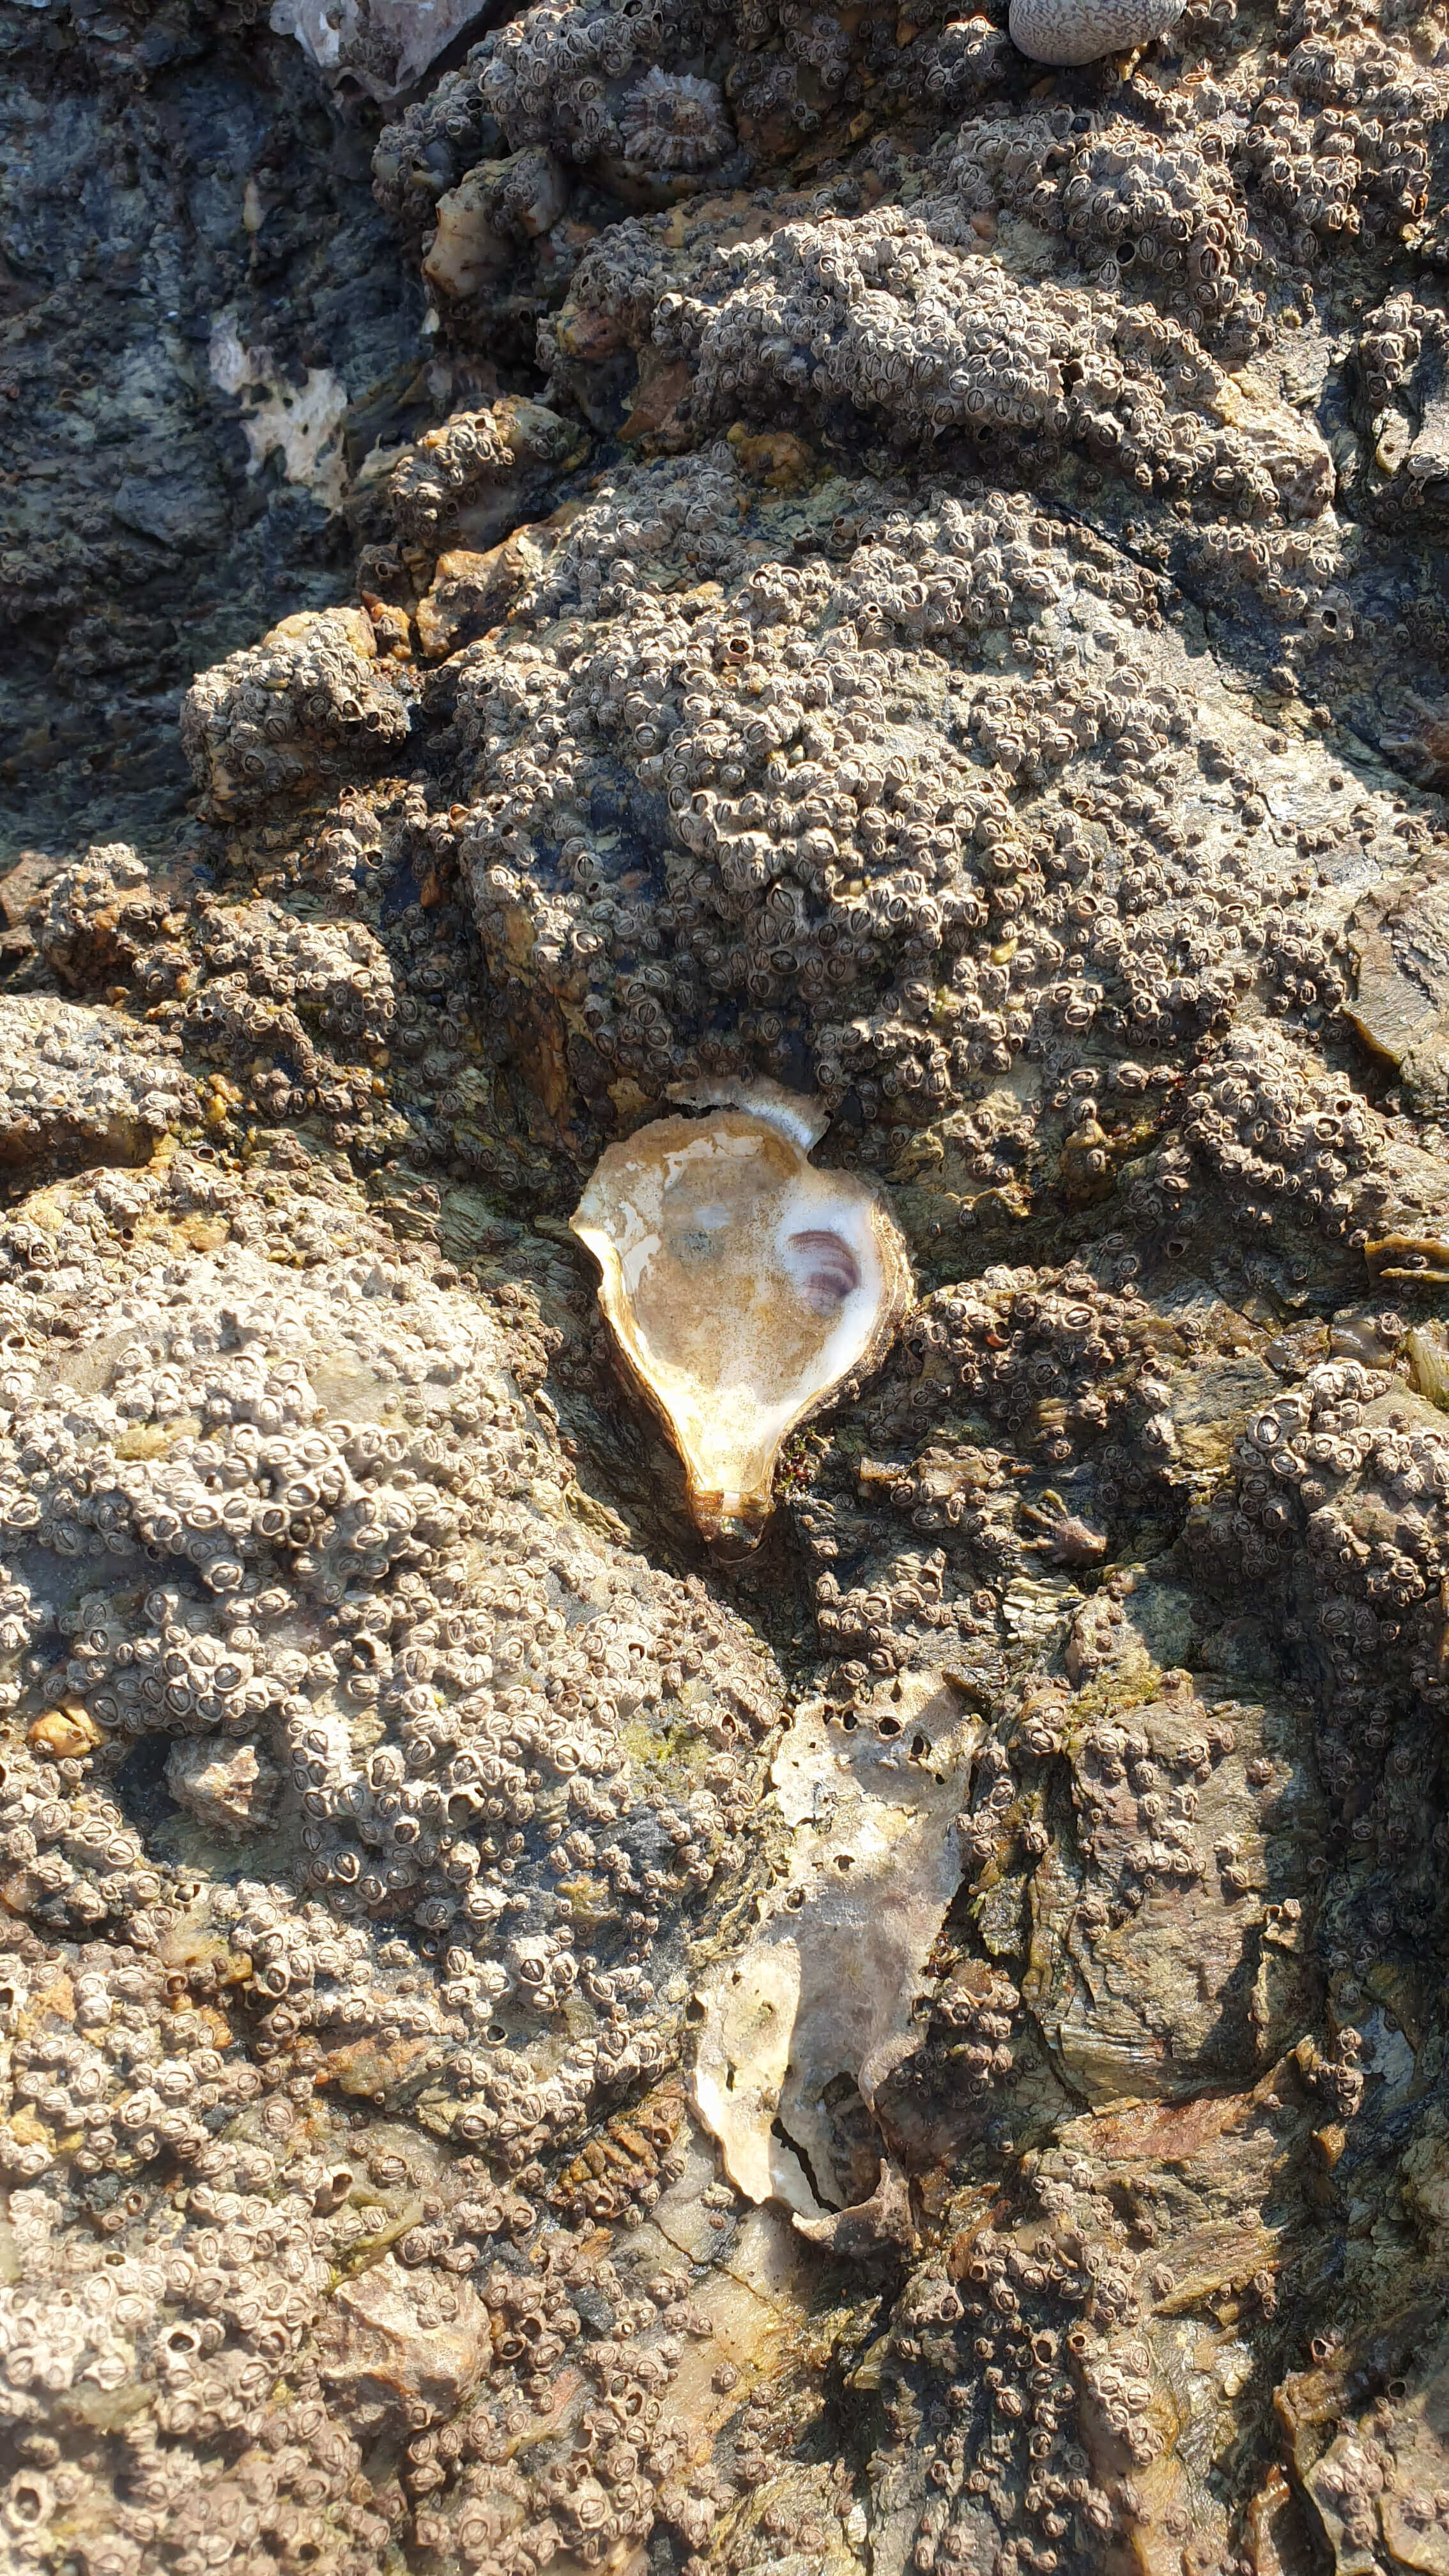 Cœur d'huitre au creux d'un rocher